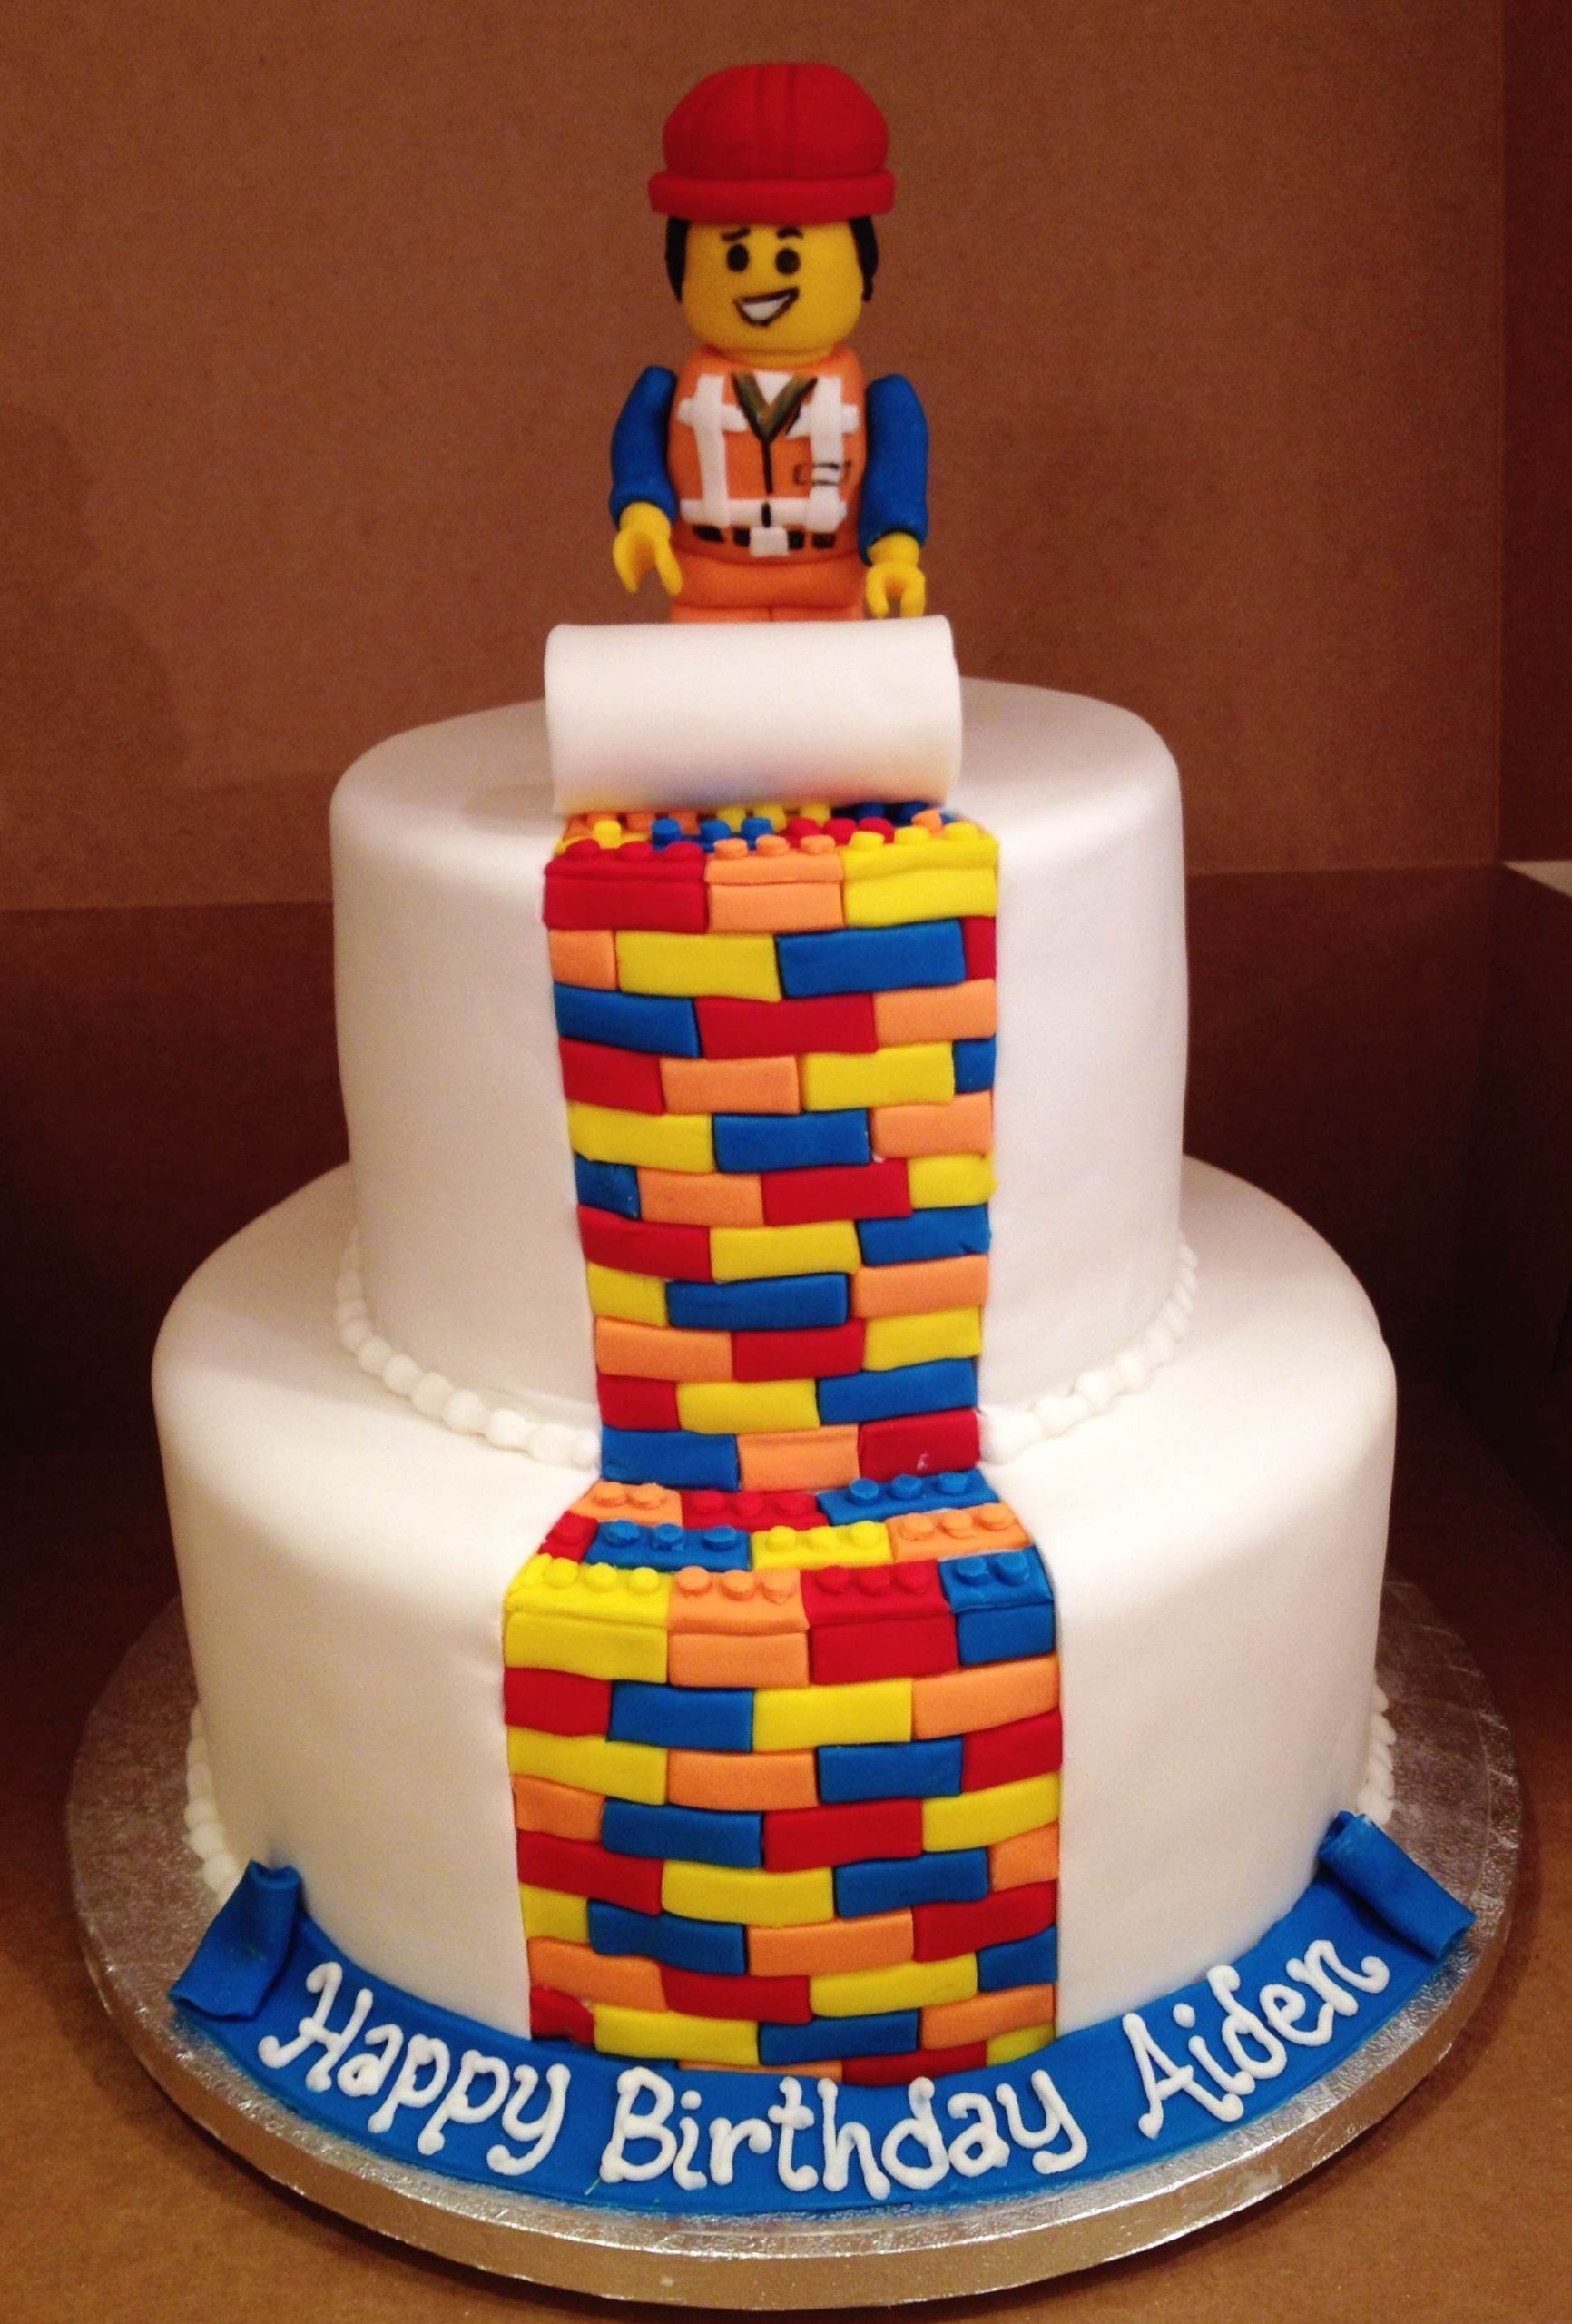 Lego Movie Birthday Cake
 Lego Movie Themed Custom Birthday Cake